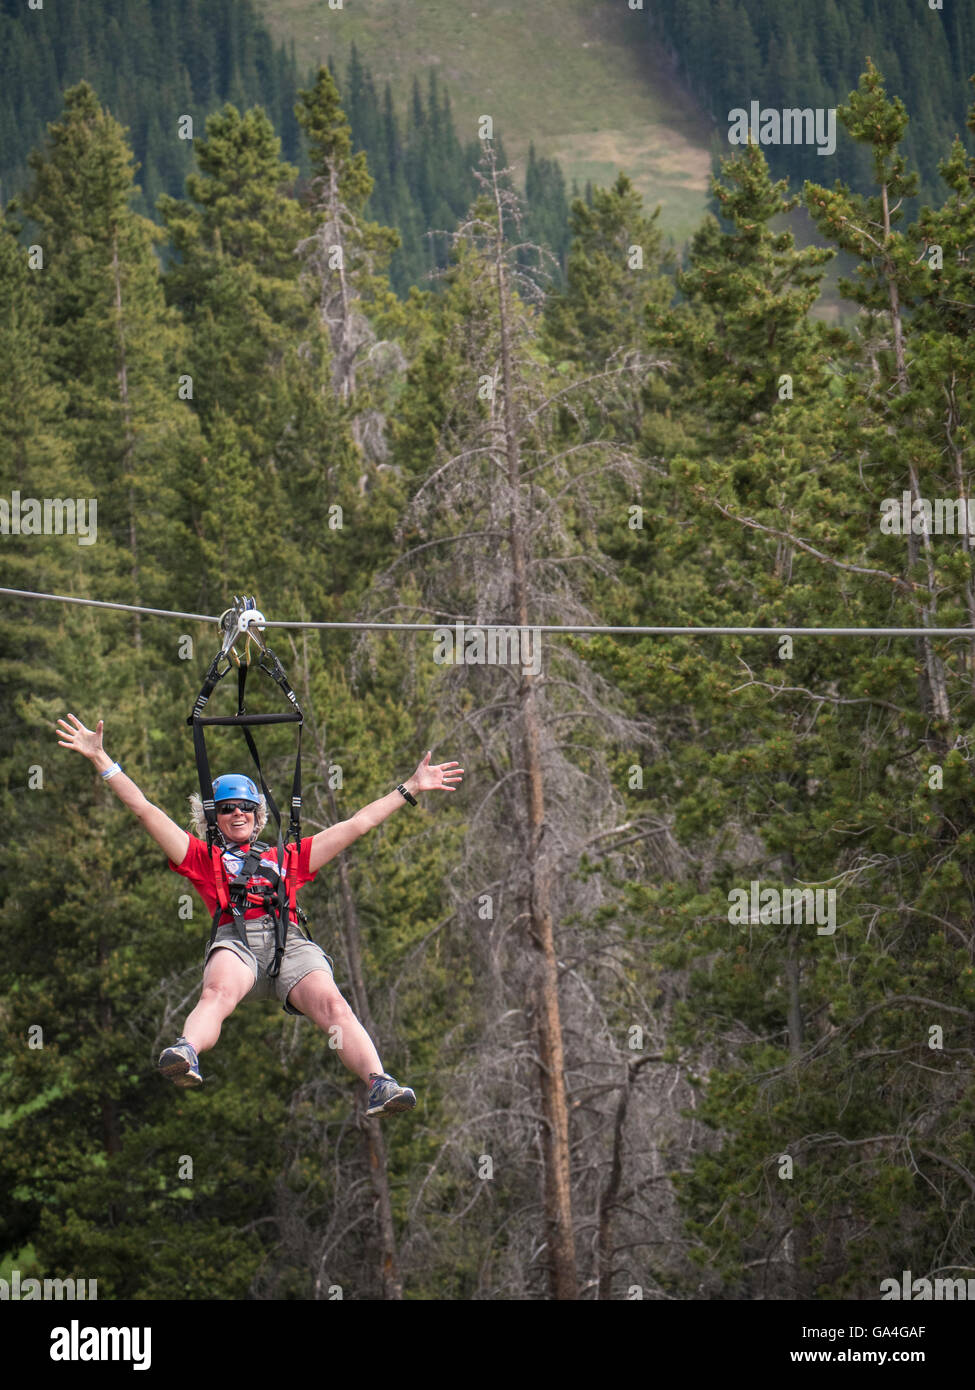 Juego aventura aérea Creek tour canopy zipline, Epic Discovery Center en el Eagle's Nest, Estación de Esquí de Vail, Vail, Colorado. Foto de stock